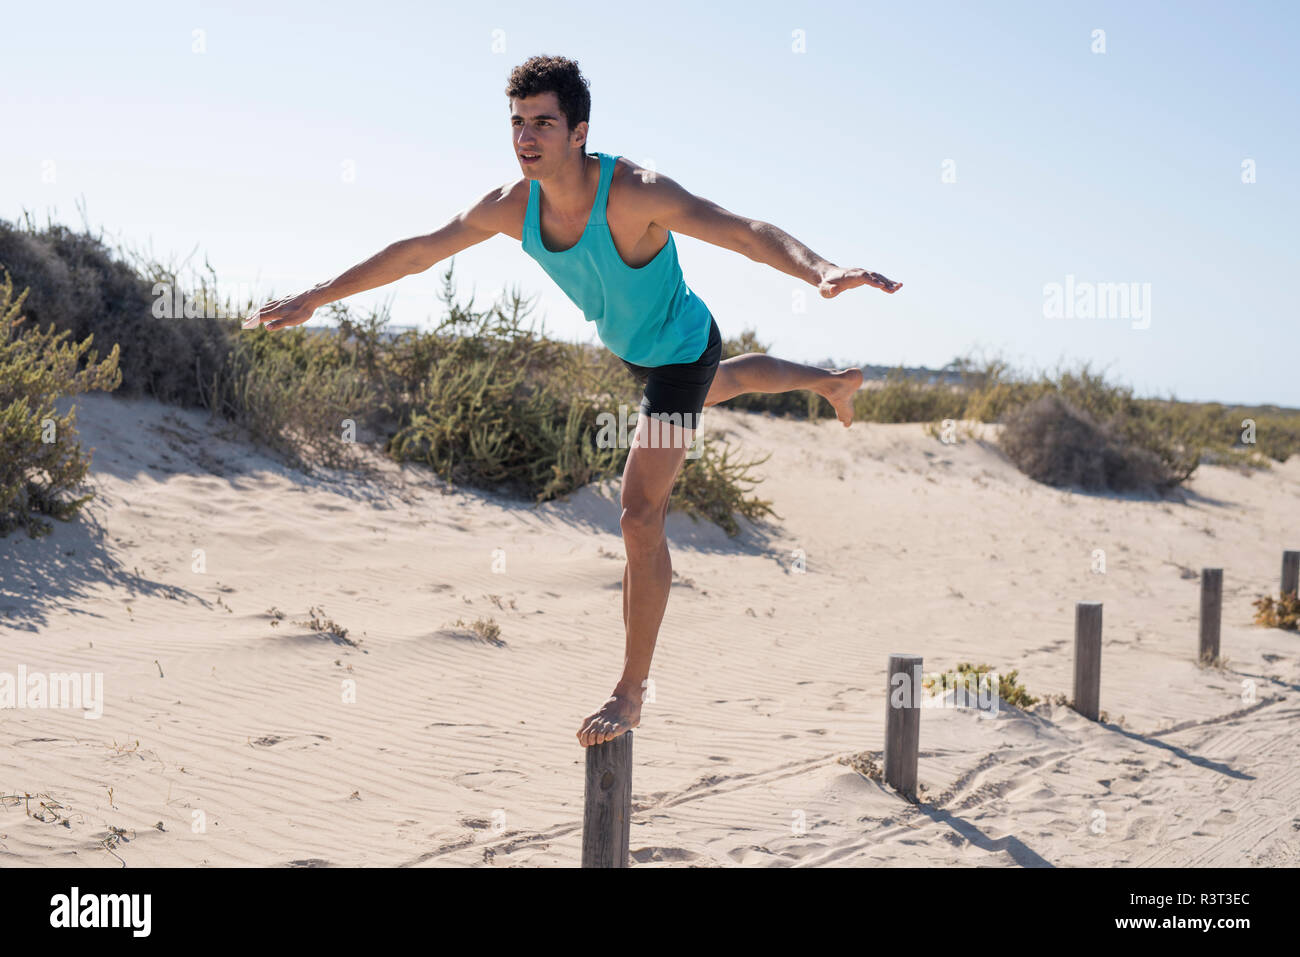 Spanien, Kanarische Inseln, Fuerteventura, junger Mann trainieren am Strand Balancieren auf einer Stange Stockfoto